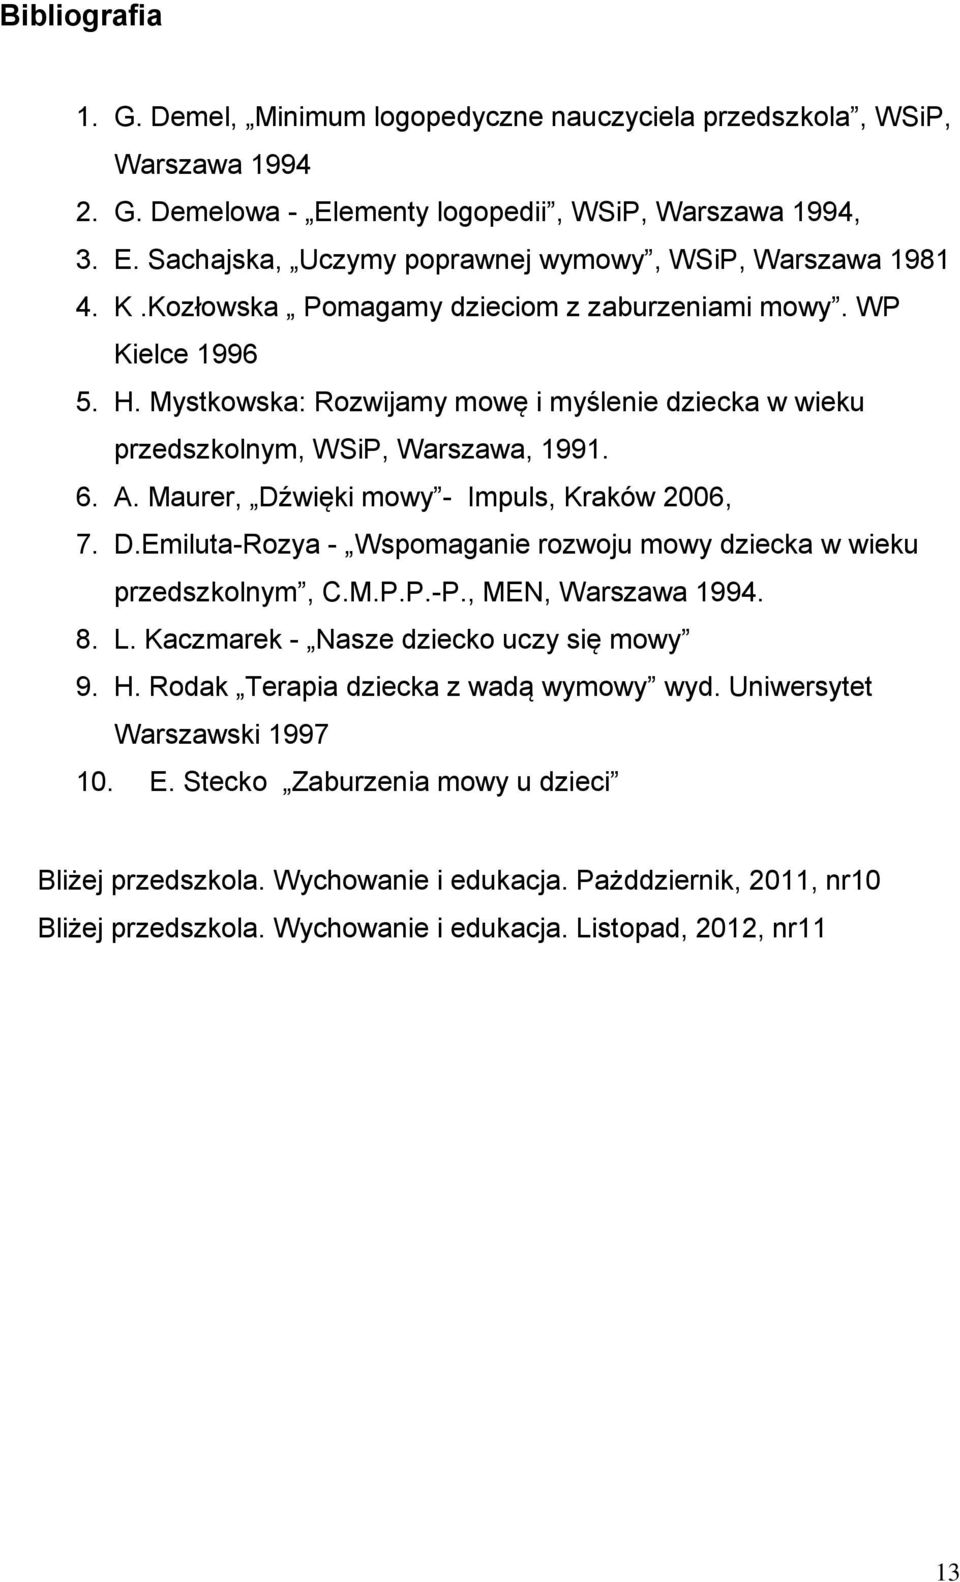 Maurer, Dźwięki mowy - Impuls, Kraków 2006, 7. D.Emiluta-Rozya - Wspomaganie rozwoju mowy dziecka w wieku przedszkolnym, C.M.P.P.-P., MEN, Warszawa 1994. 8. L.